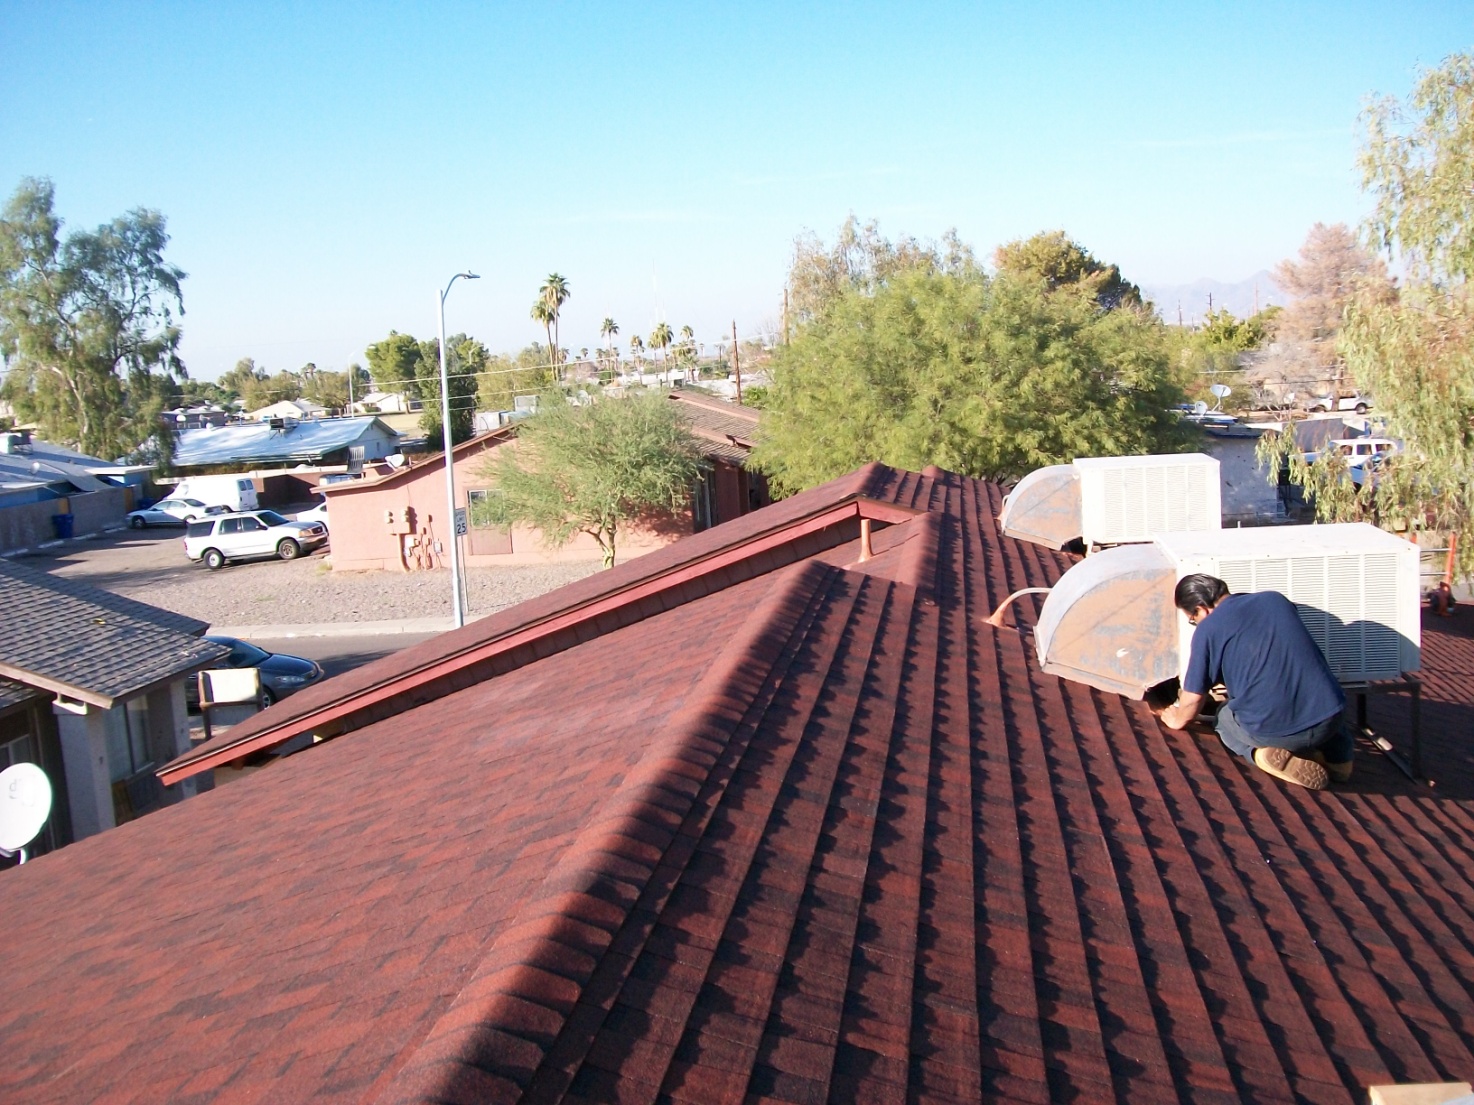 Arizona Roof Rescue | 6069 N 57th Dr, Glendale, AZ 85301 | Phone: (602) 242-2706